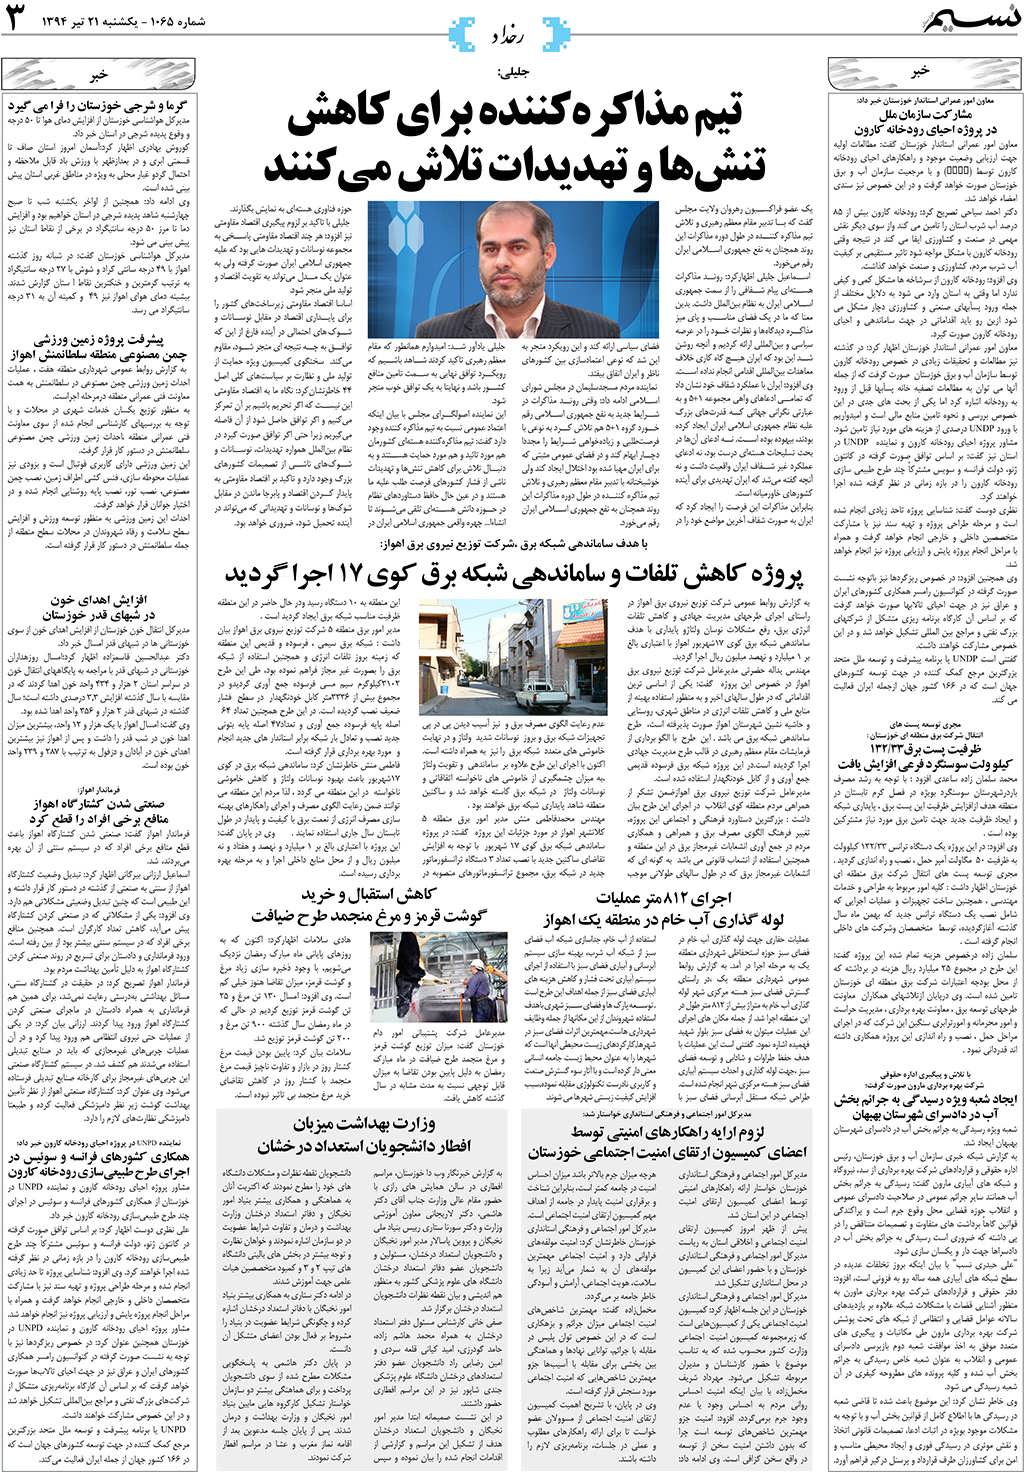 صفحه رخداد روزنامه نسیم شماره 1065